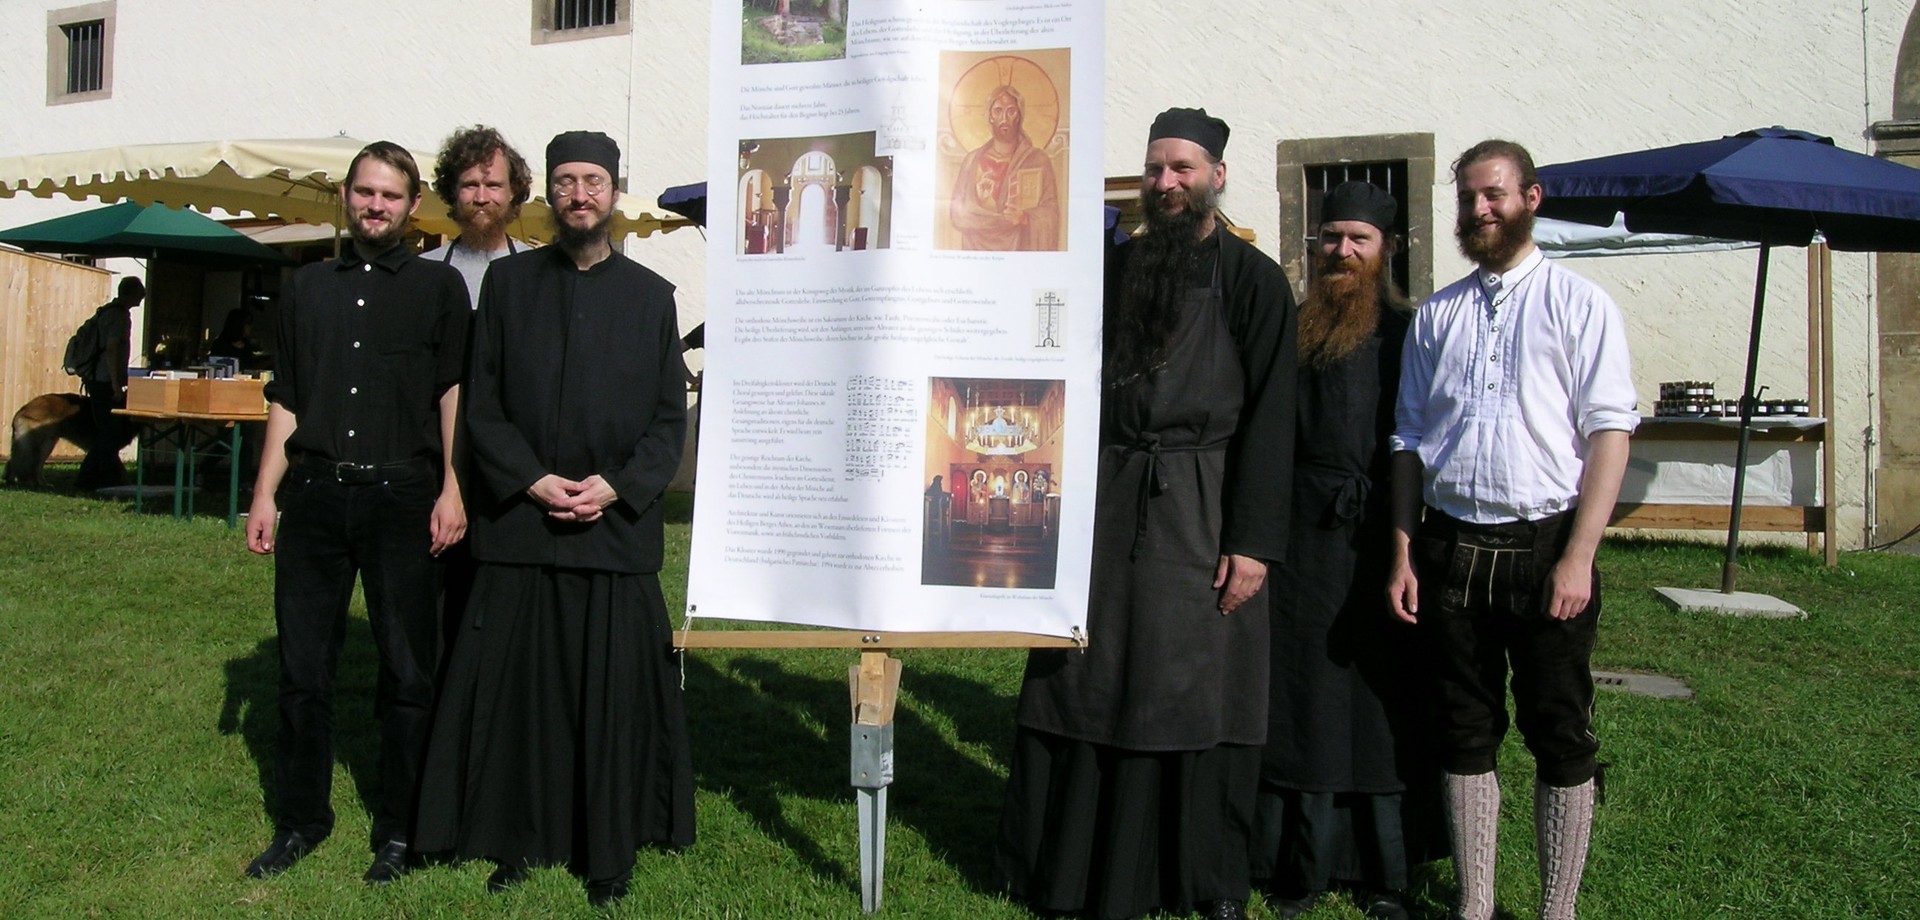 Auf dem Foto sieht man die Vertreter des Deutschen Orthodoxen Klosters Buchhagen auf dem Klostermarkt in Dalheim.

Foto: LWL/Rosar